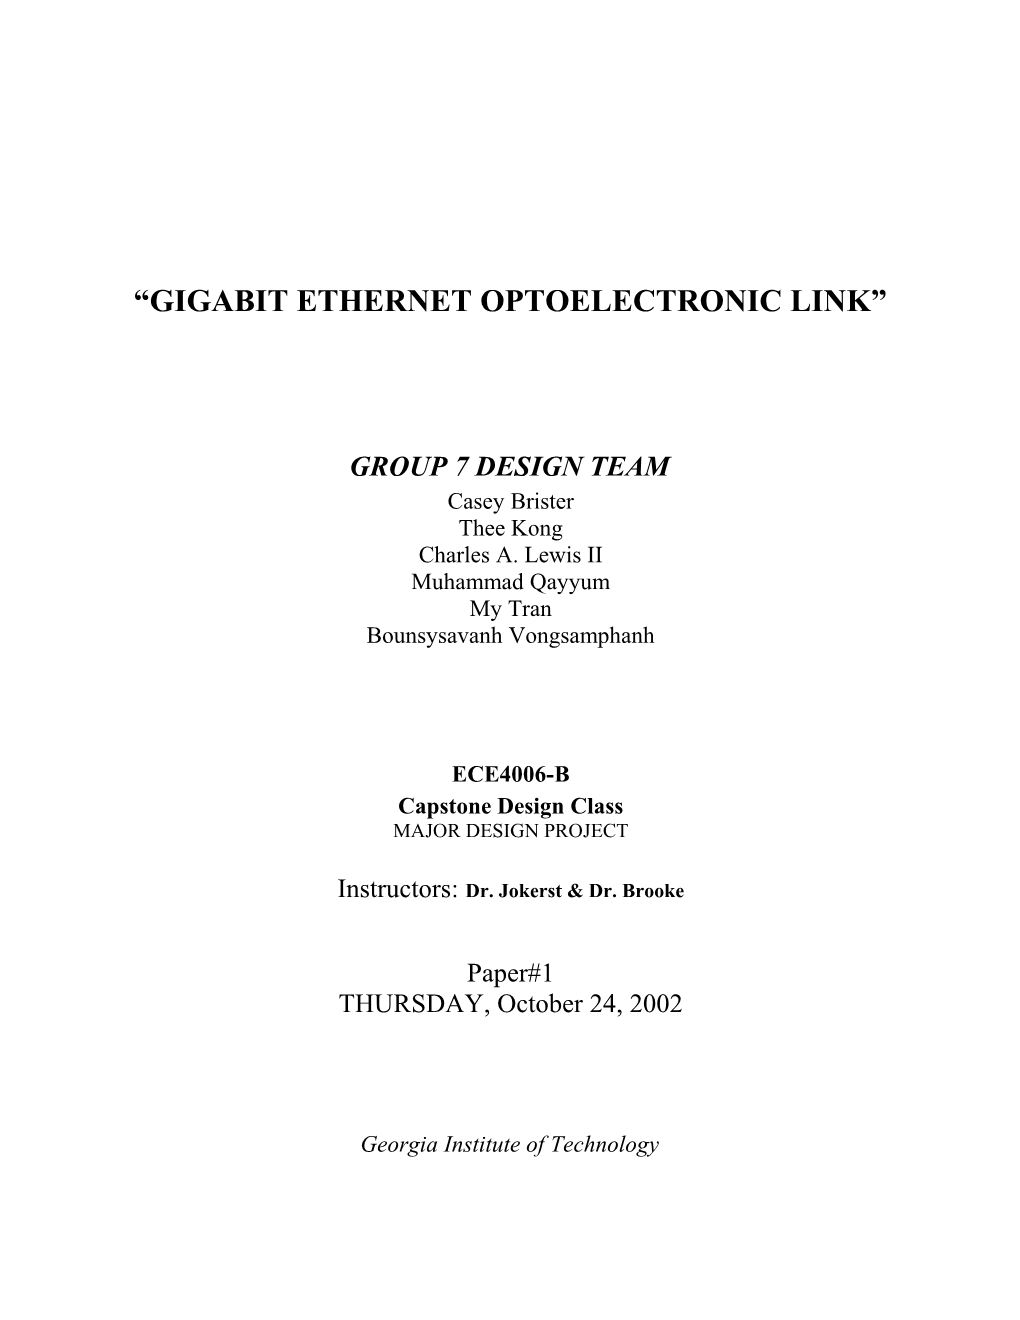 Gigabit Ethernet Optoelectronic Link